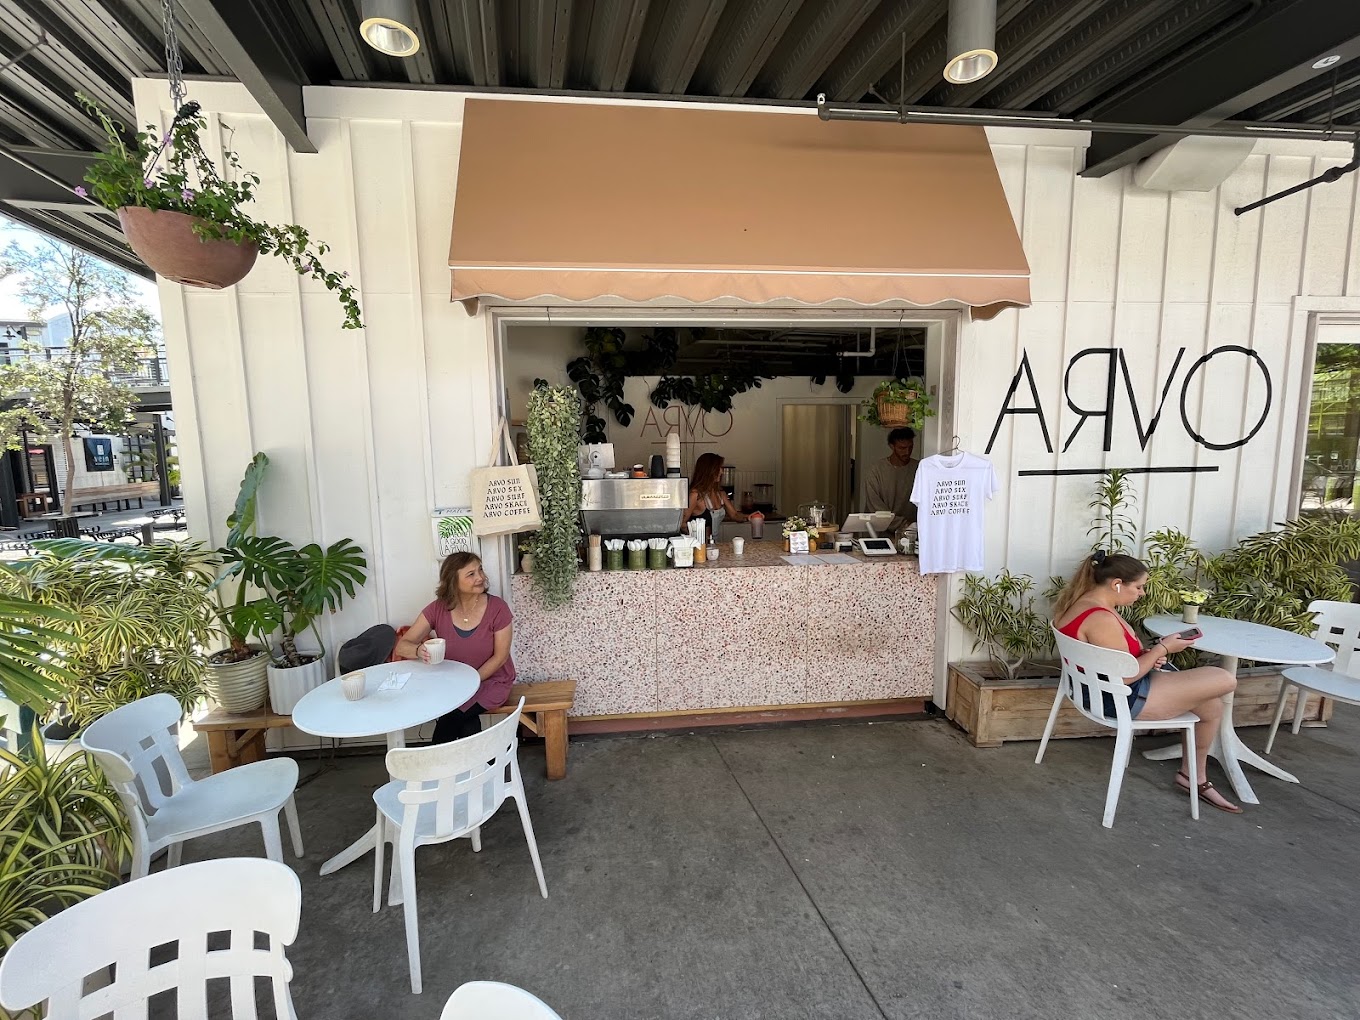 Arvo Cafe in Honolulu